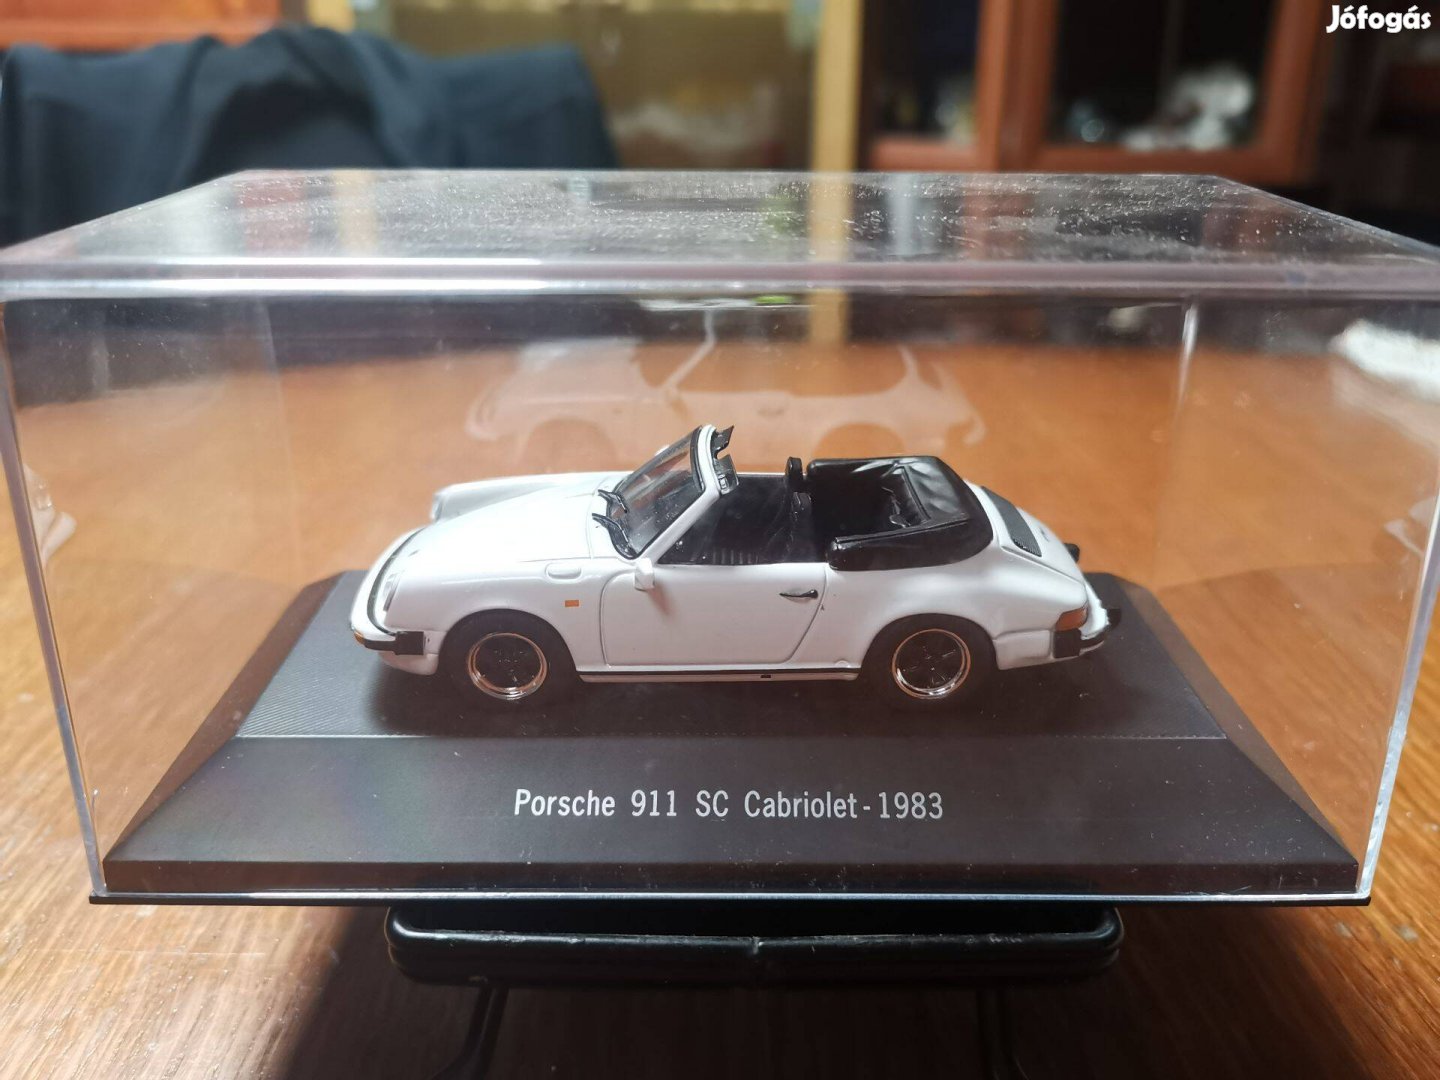 1/43 Porsche 911 SC Cabriolet - 1983